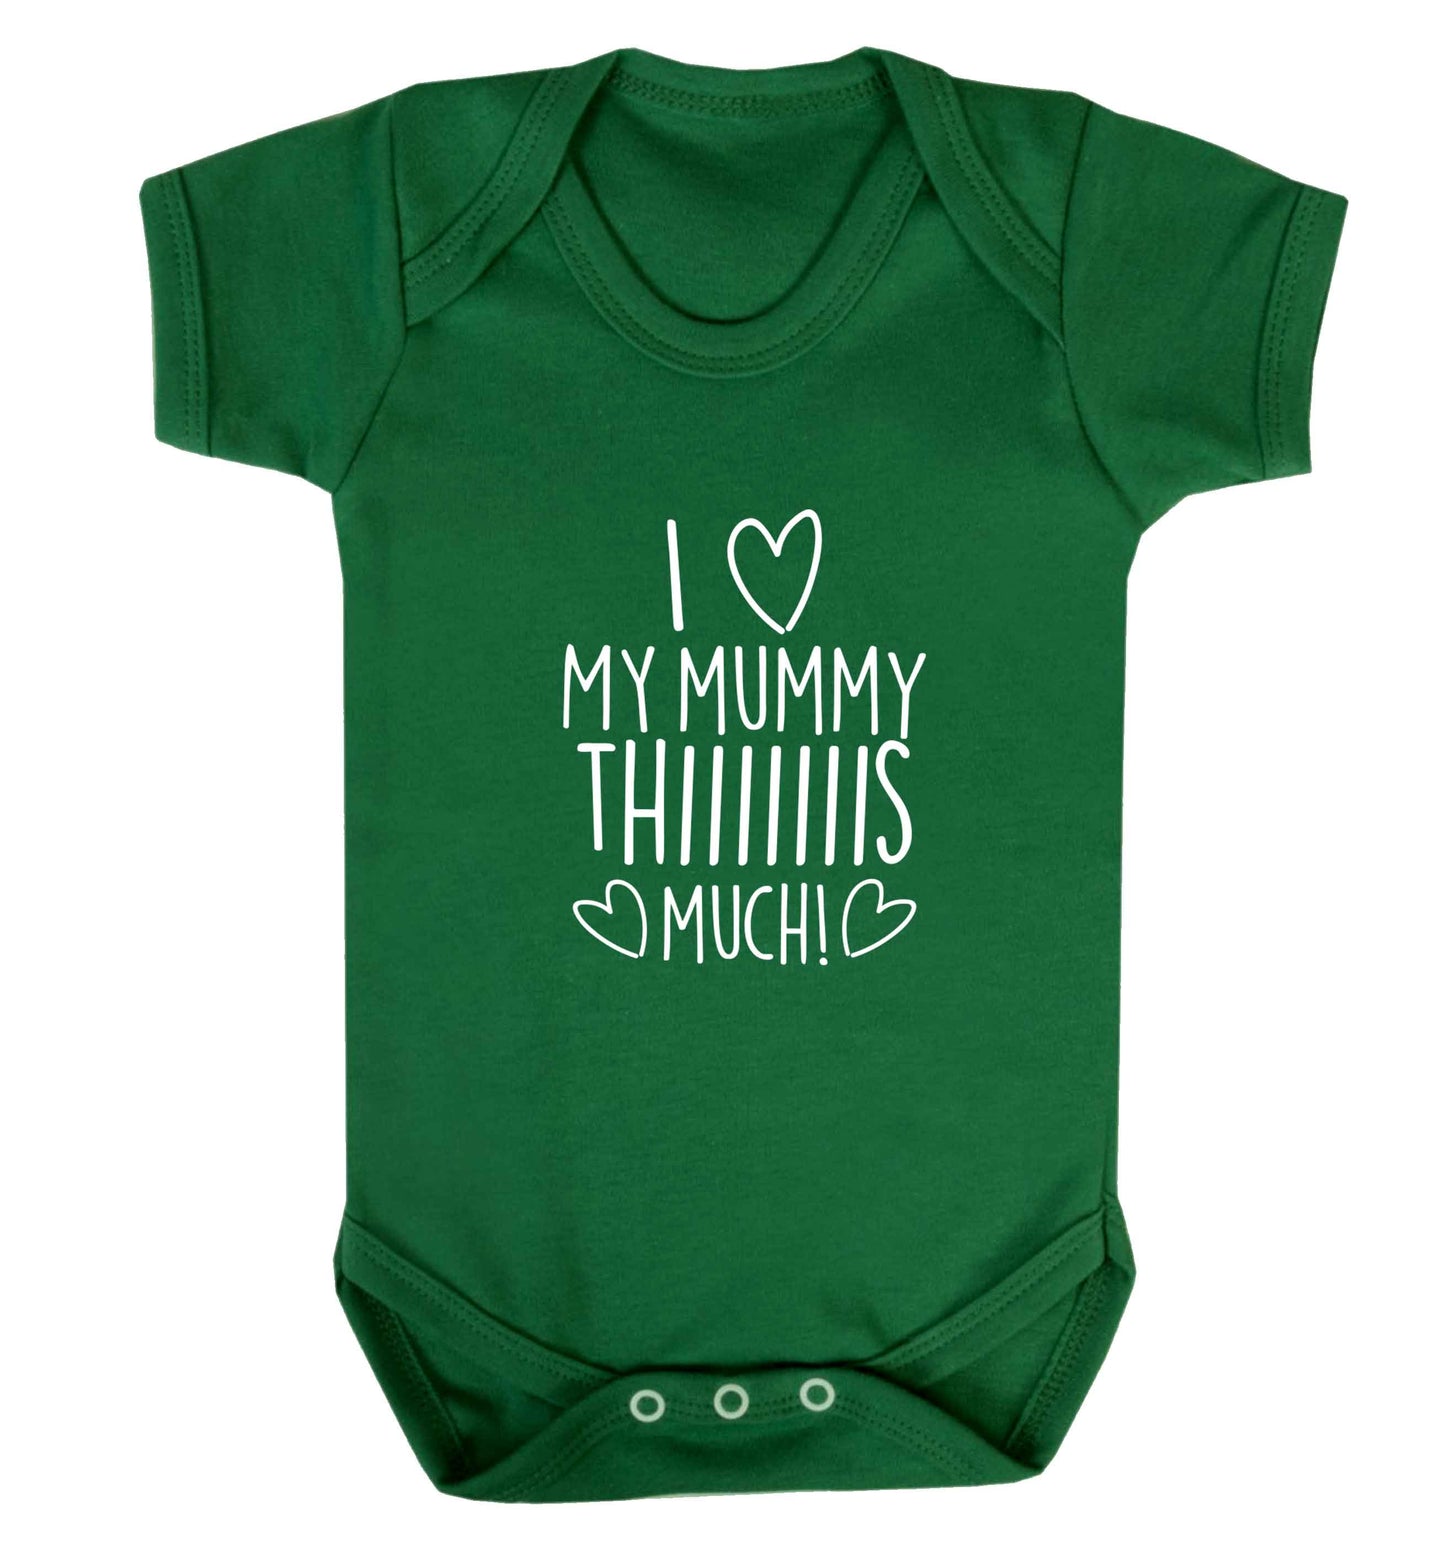 I love my mummy thiiiiis much! baby vest green 18-24 months